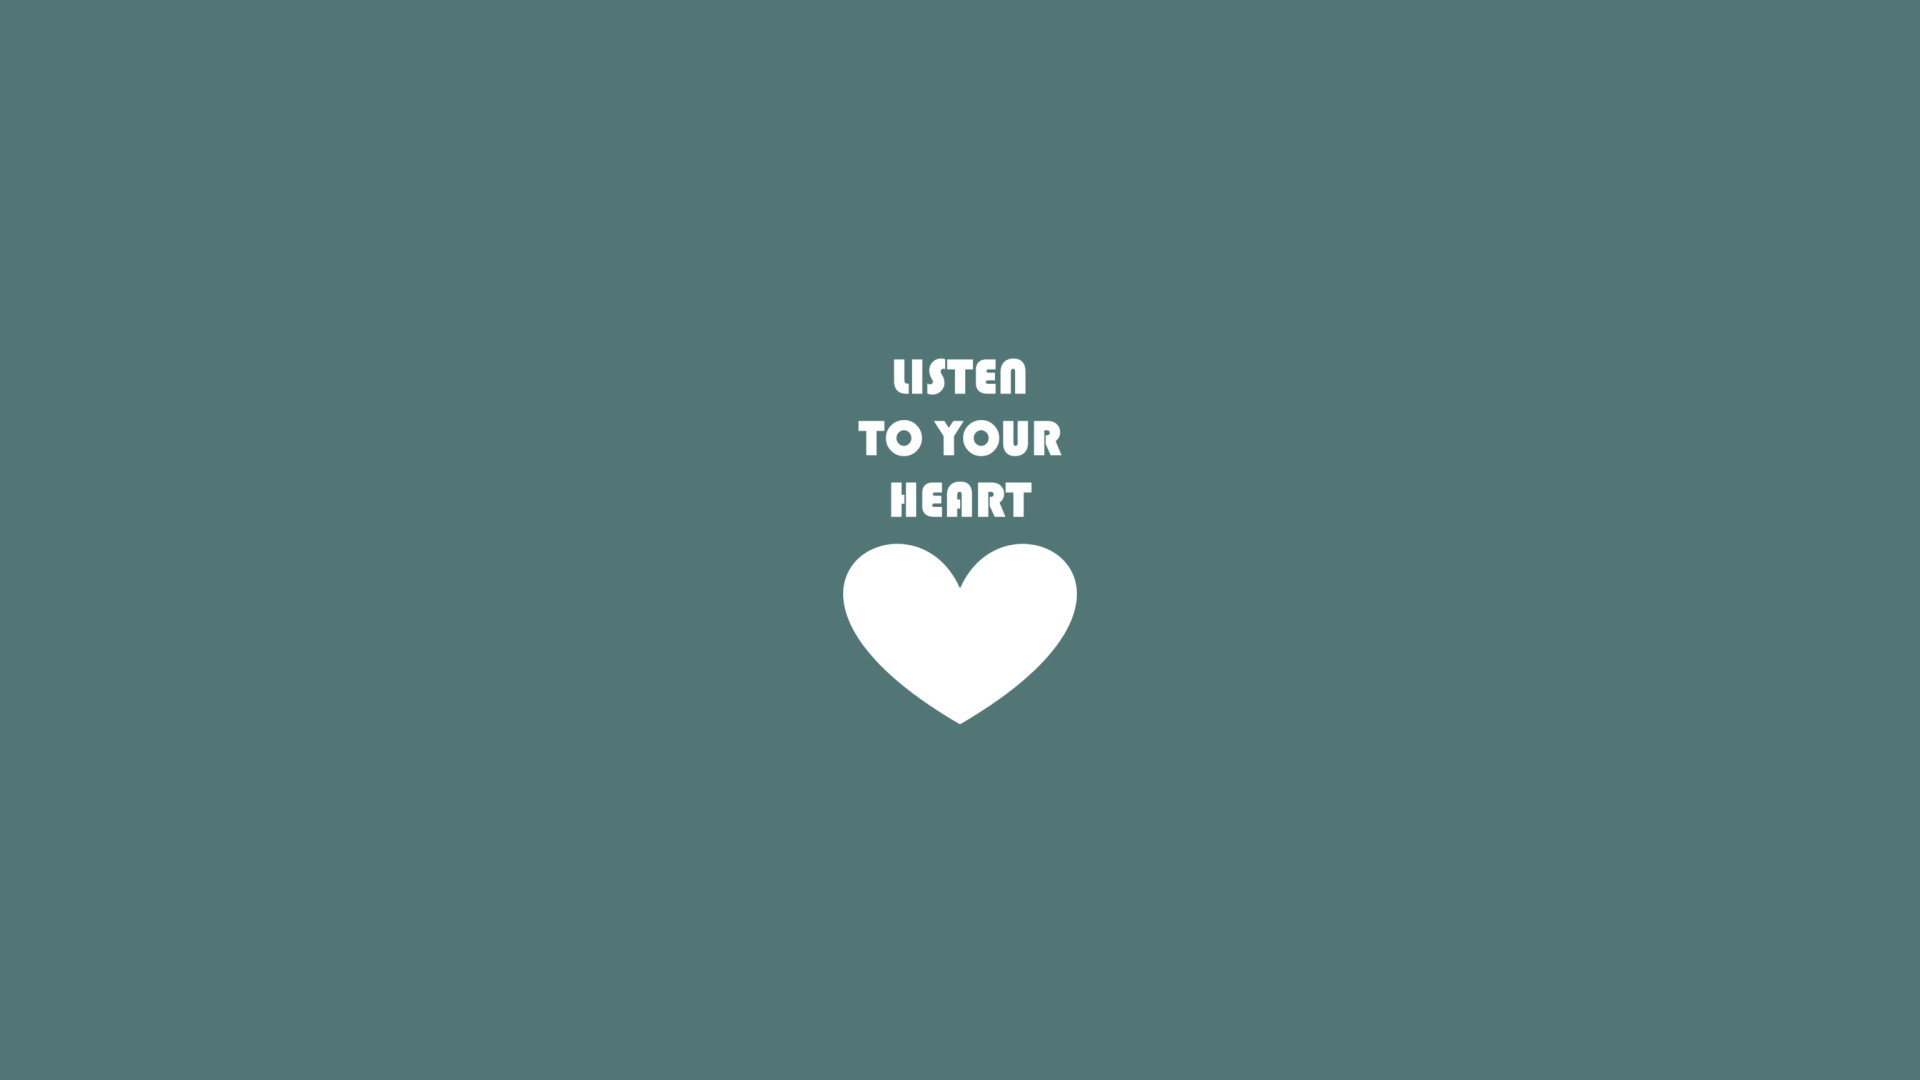 Das Listen To Your Heart Wallpaper 1920x1080